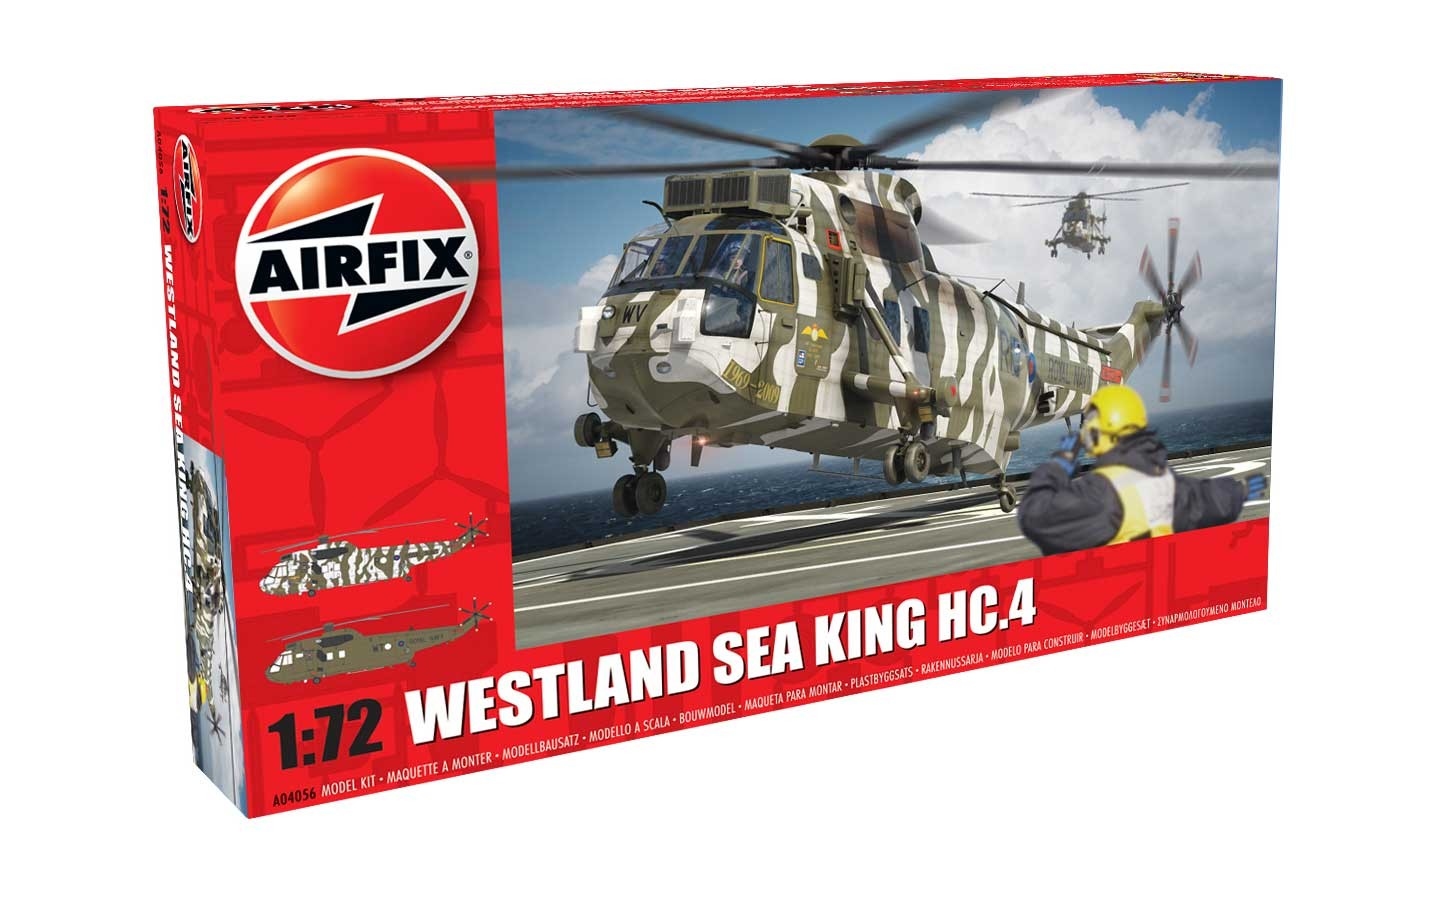 Airfix Westland Sea King HC.4 in 1:72 bouwpakket